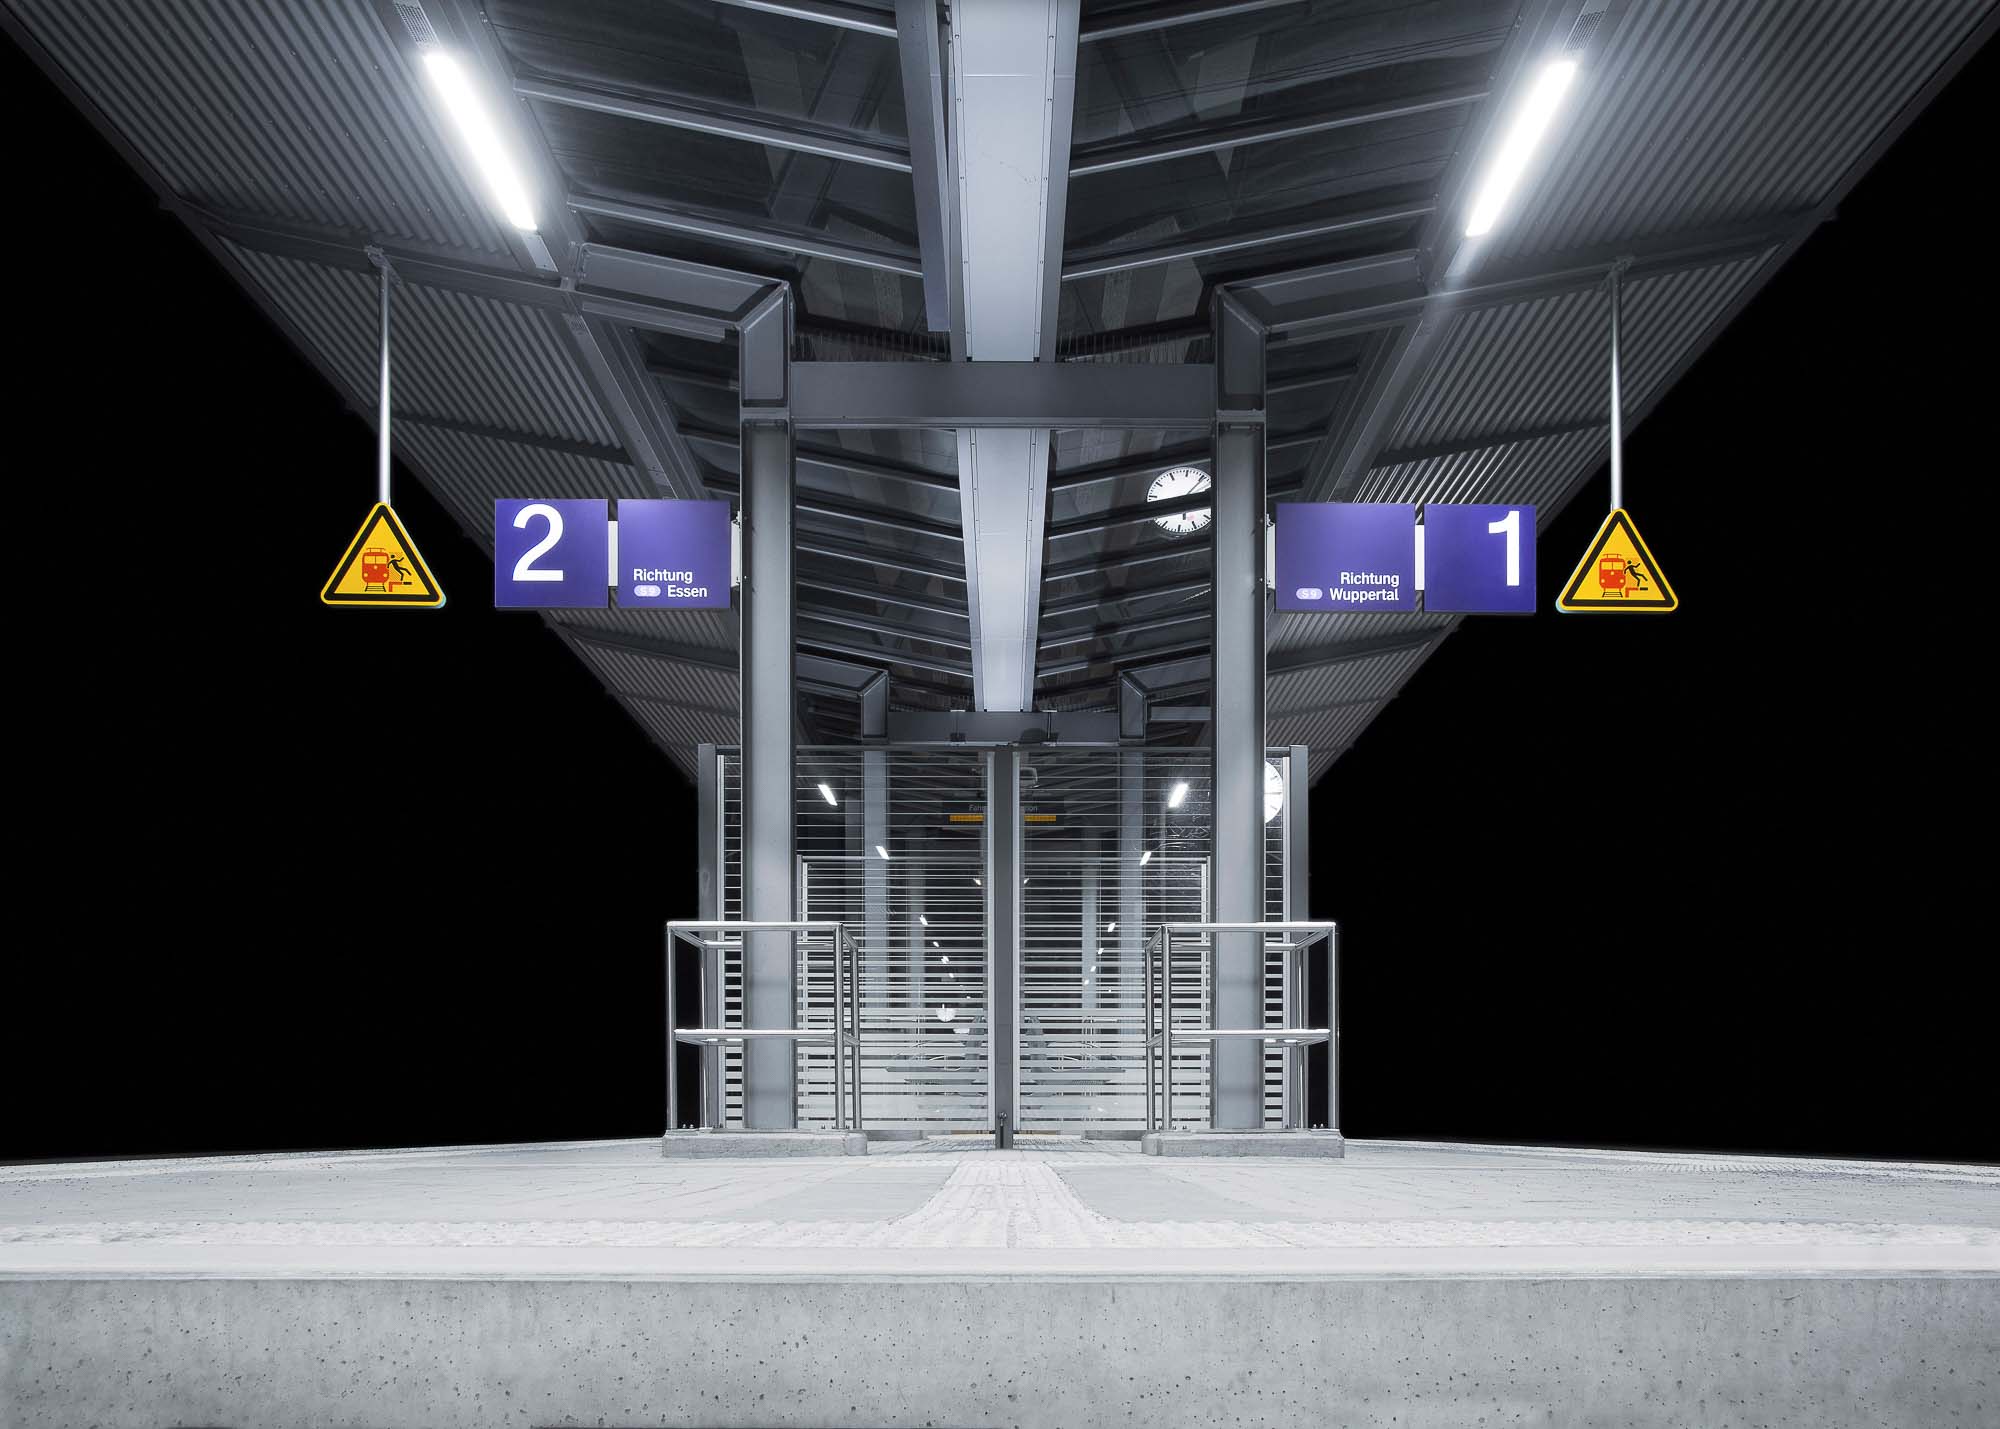 Bahnhof-Kupferdreh unter Neonlicht mit viel Beton